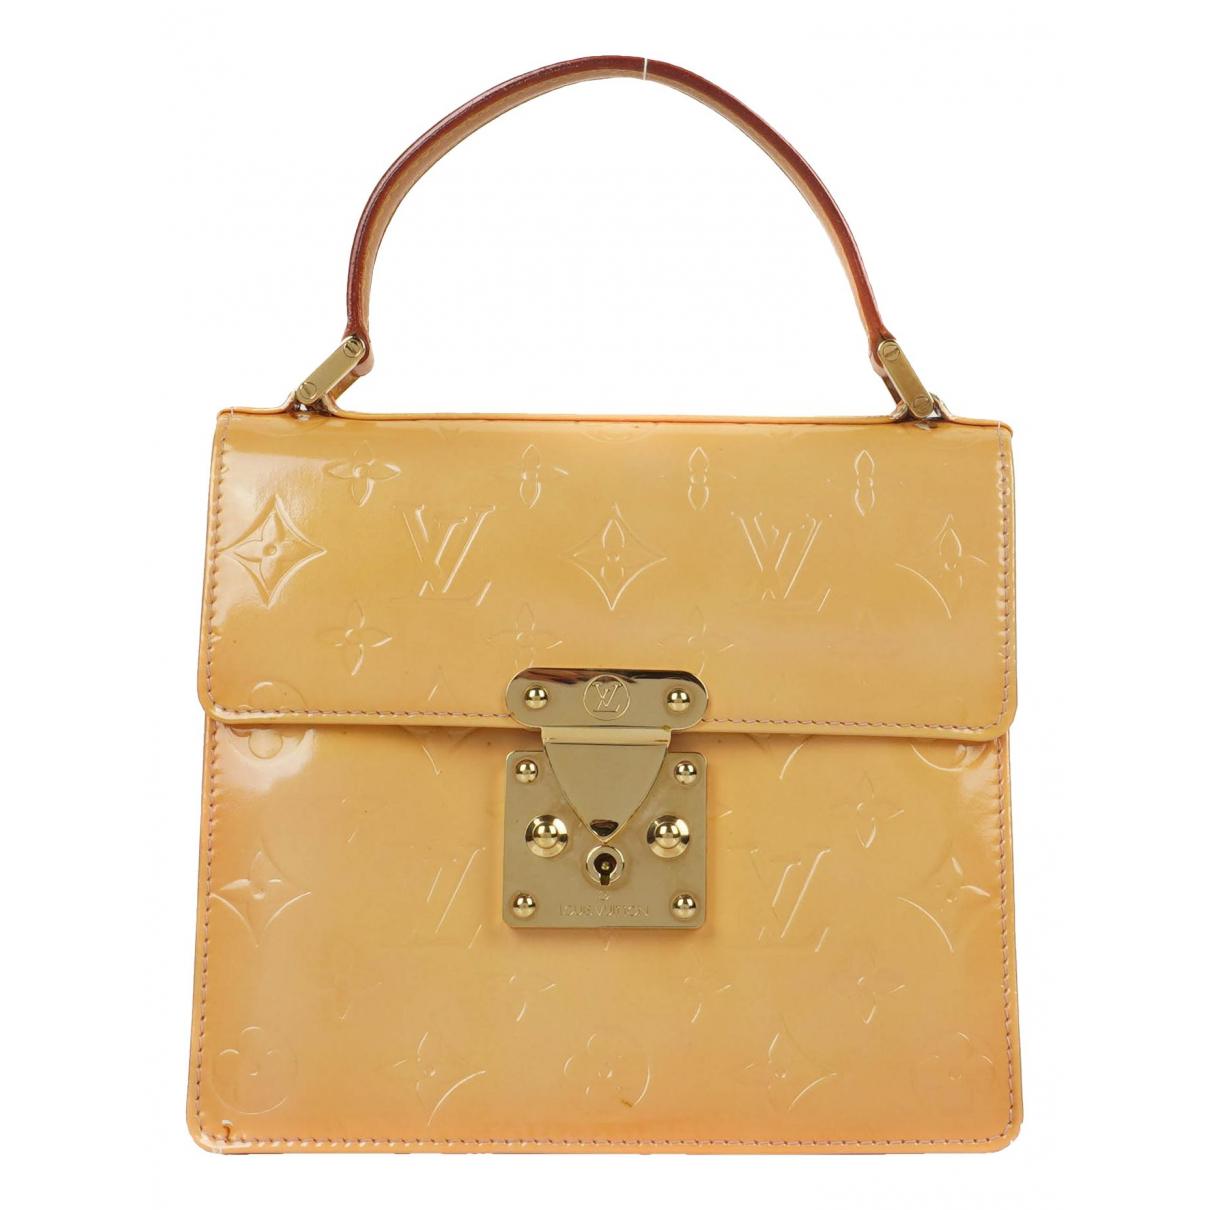 Louis Vuitton - Authenticated Noé Handbag - Leather Orange Plain for Women, Good Condition